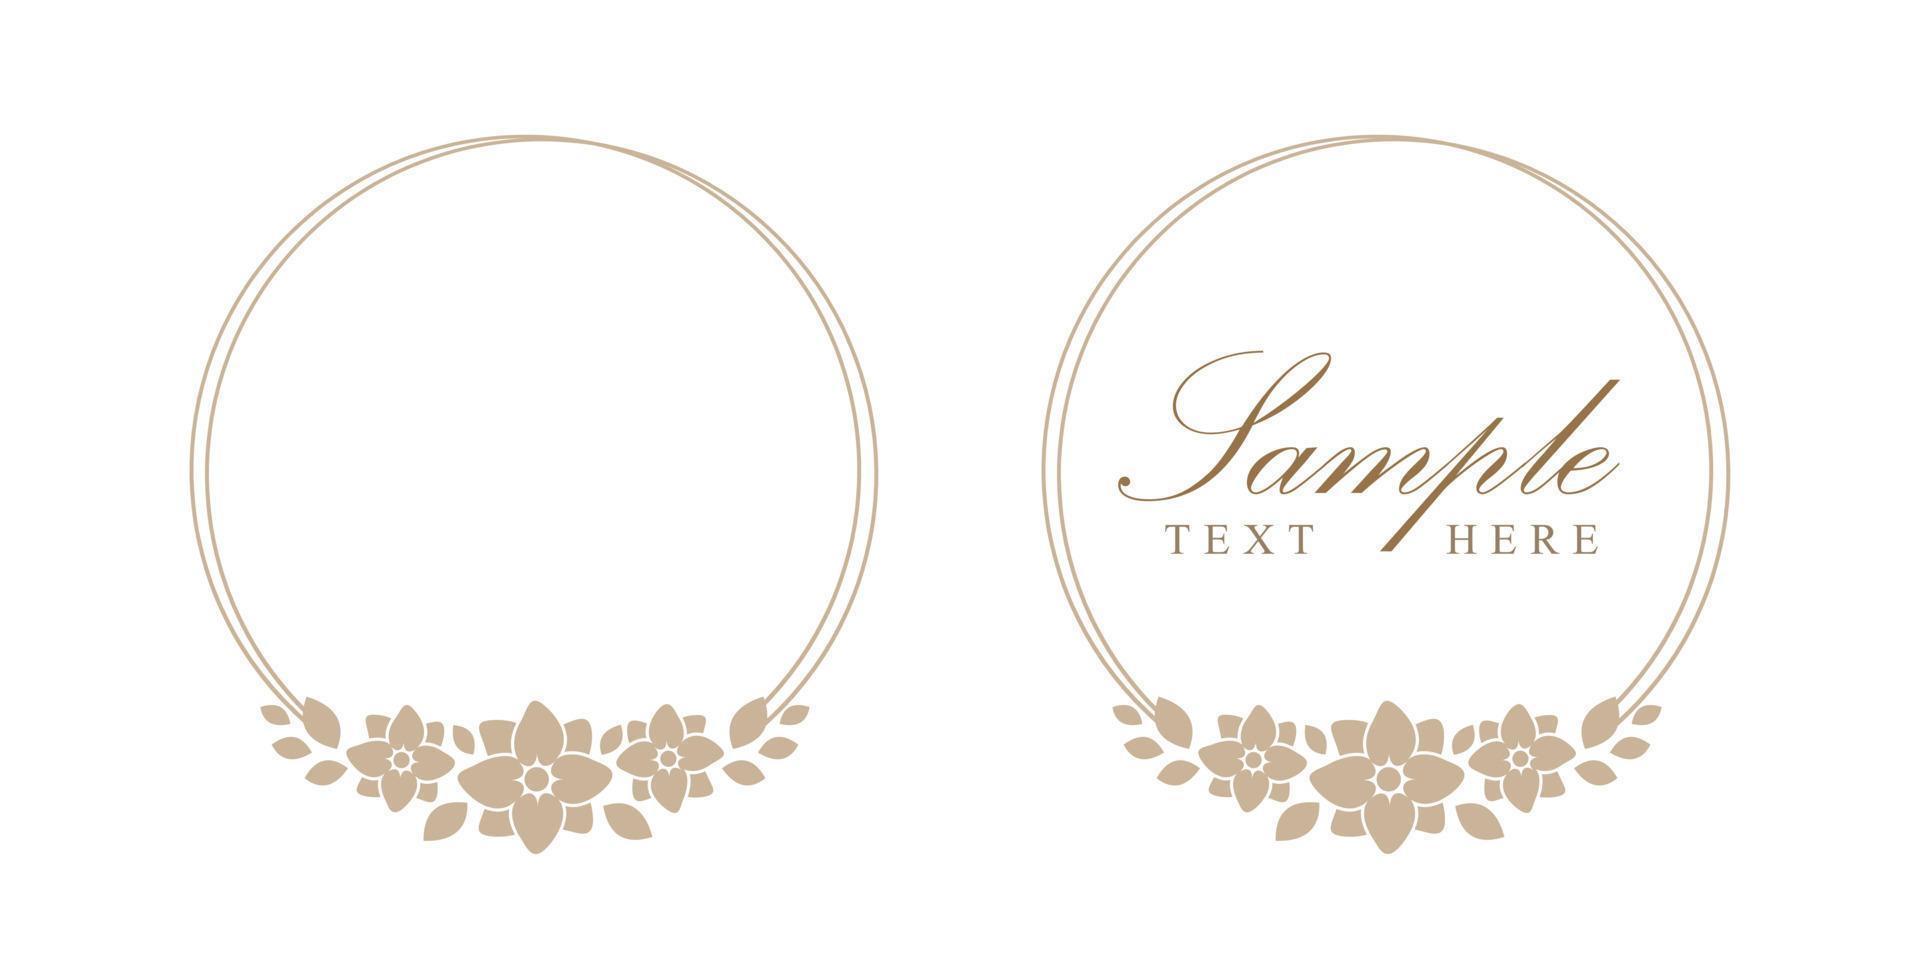 Floral beige round frame. Botanical boho border vector illustration. Simple elegant romantic style for wedding events, signs, logo, labels, social media posts, etc.